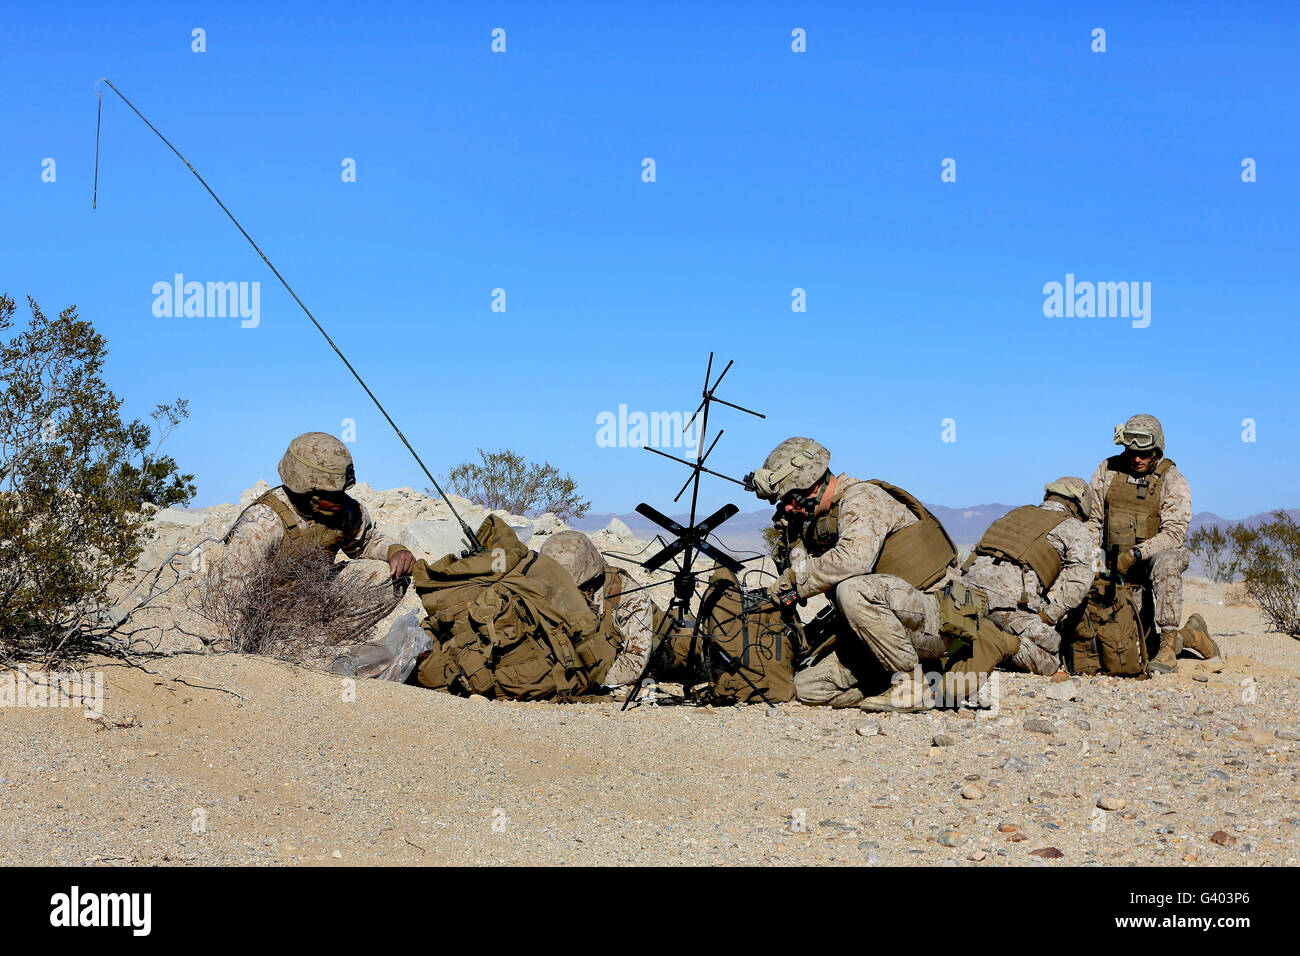 U.S. Marines setup communication equipment and conduct radio checks. Stock Photo